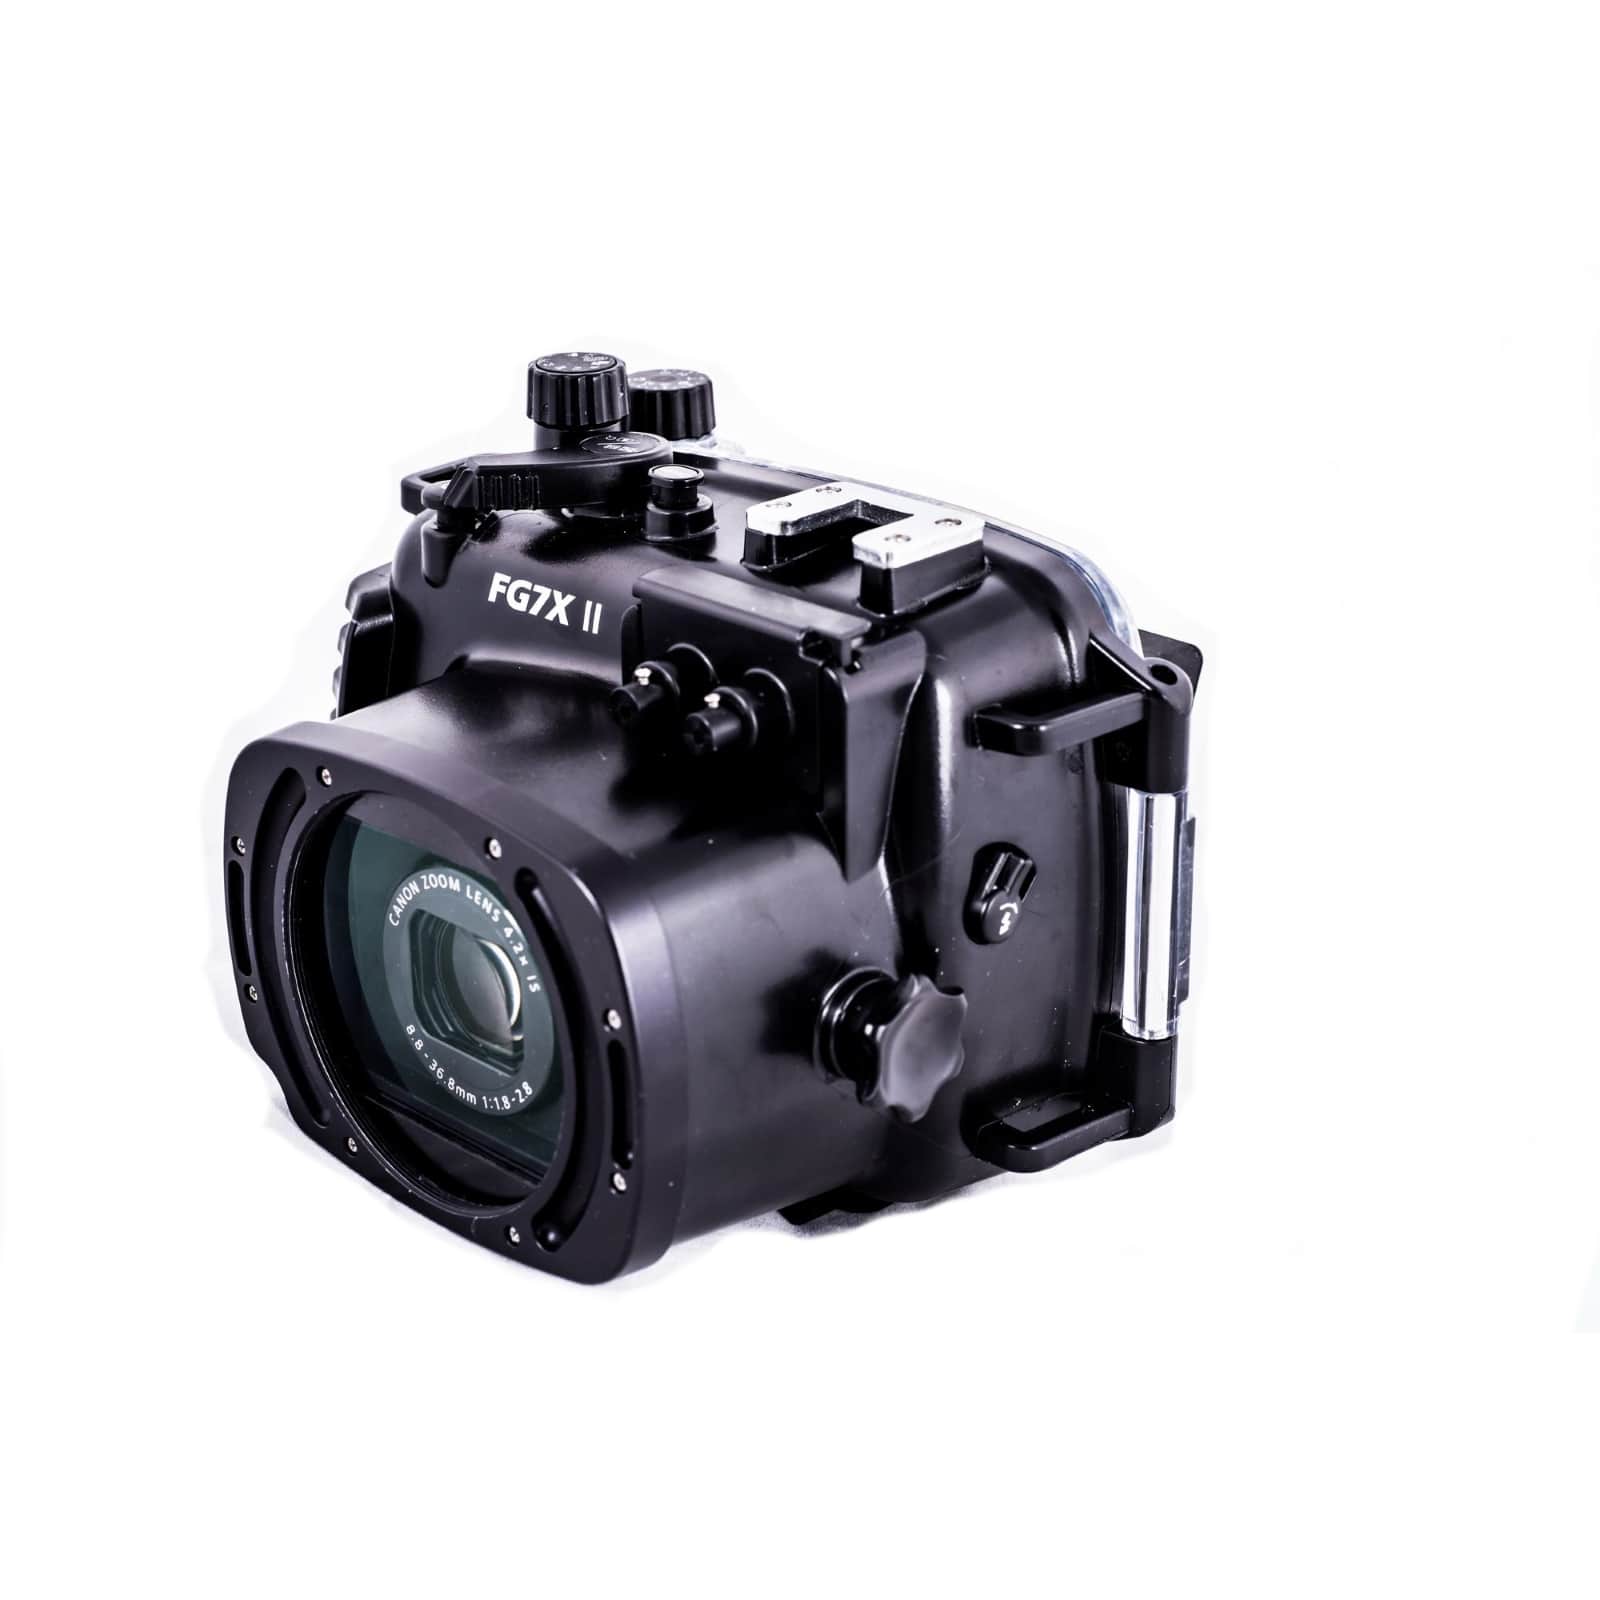 Canon G7X MK II + Fantasea סט צילום לצלילה - דוגית